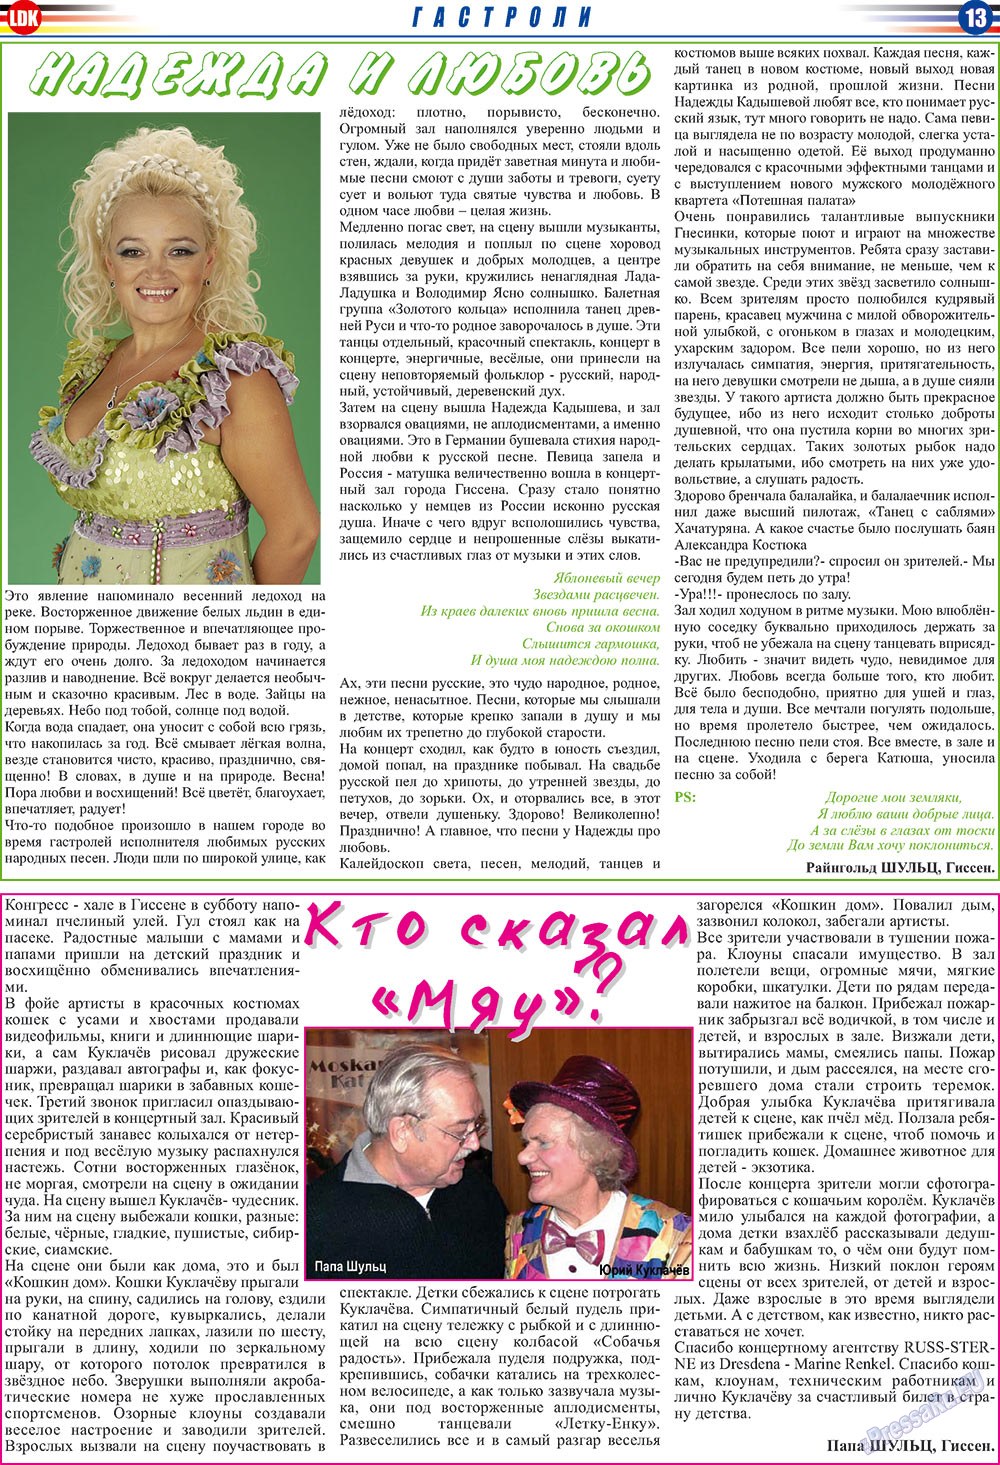 LDK по-русски (газета). 2009 год, номер 12, стр. 13